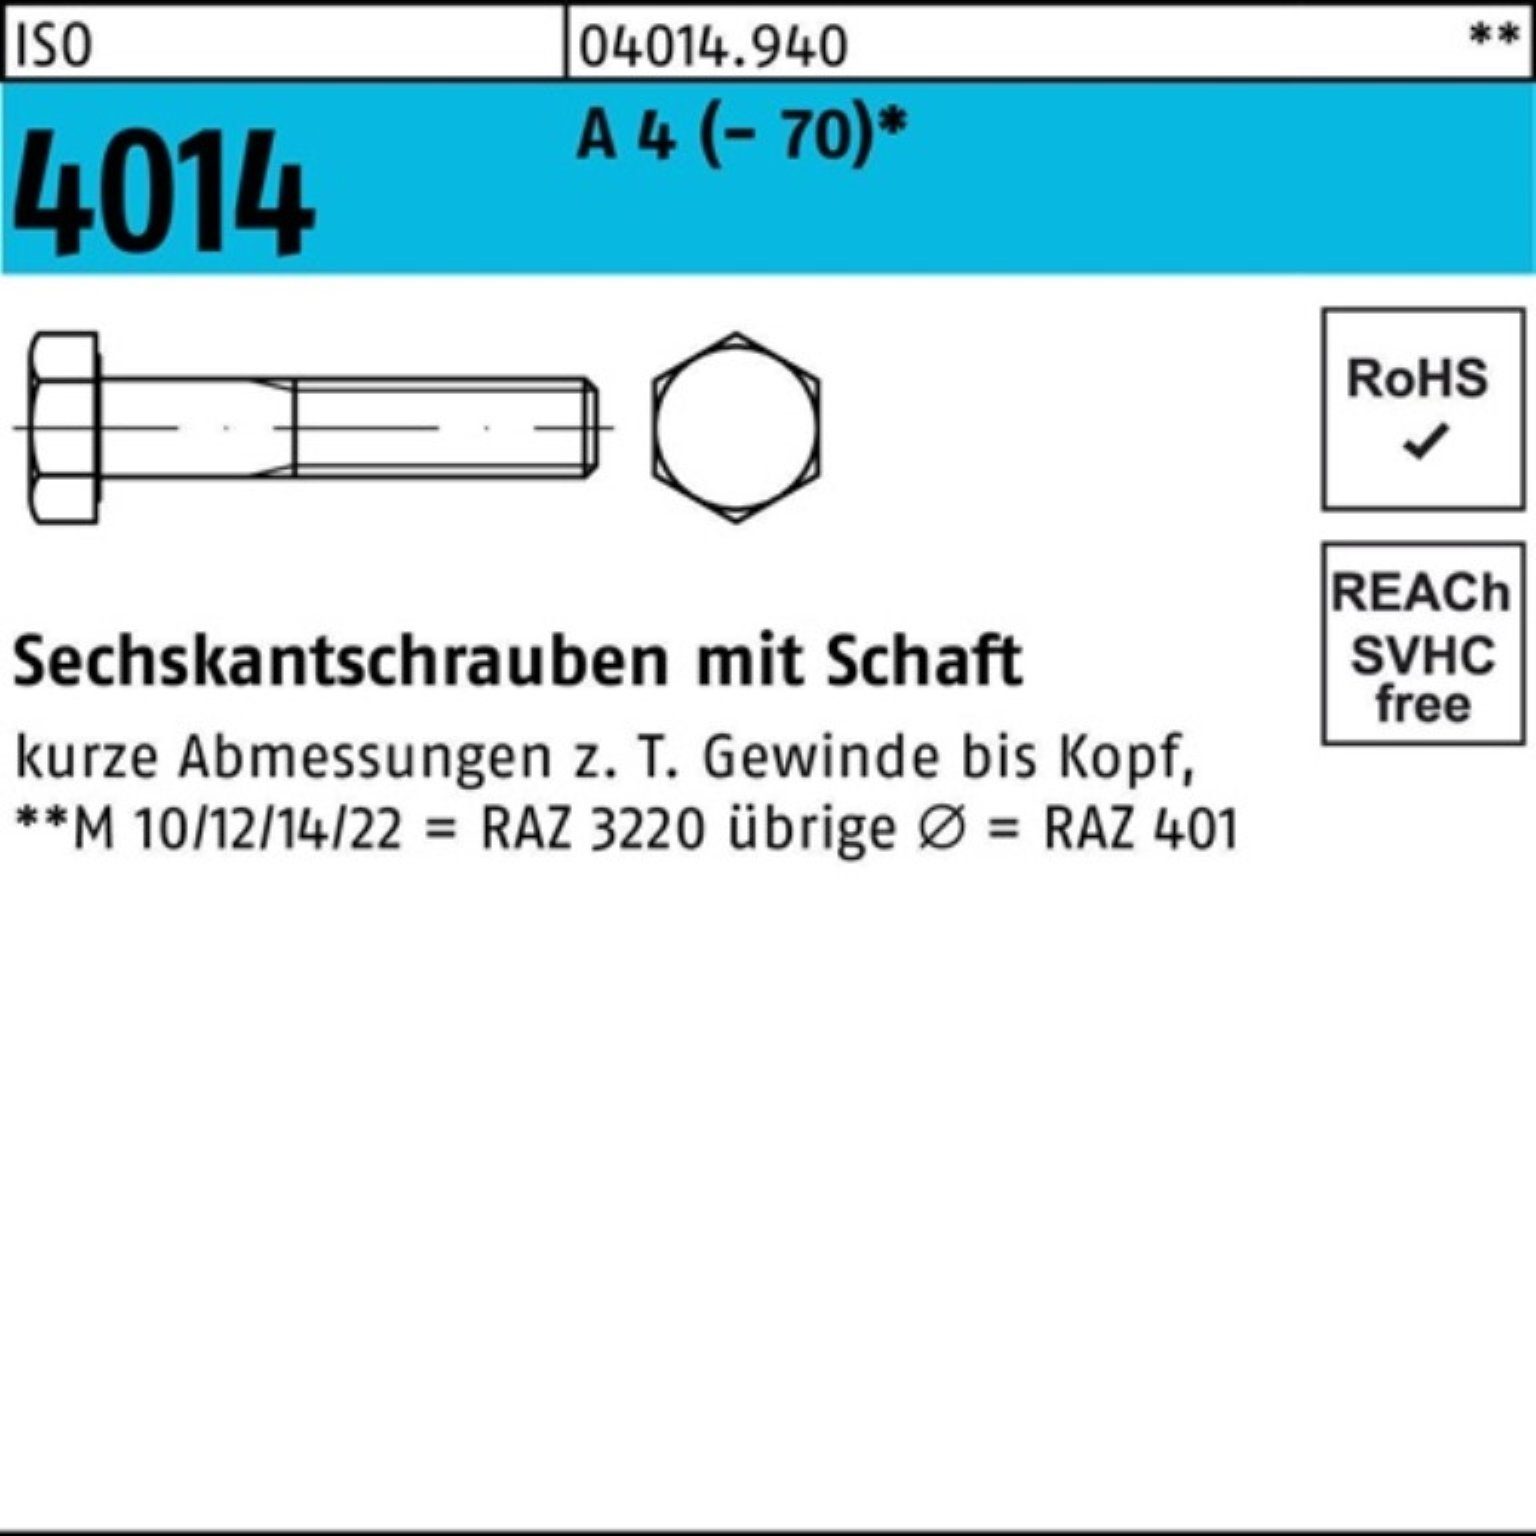 Bufab Sechskantschraube 100er 4 M12x Pack 4014 St 240 1 A (70) Sechskantschraube ISO Schaft